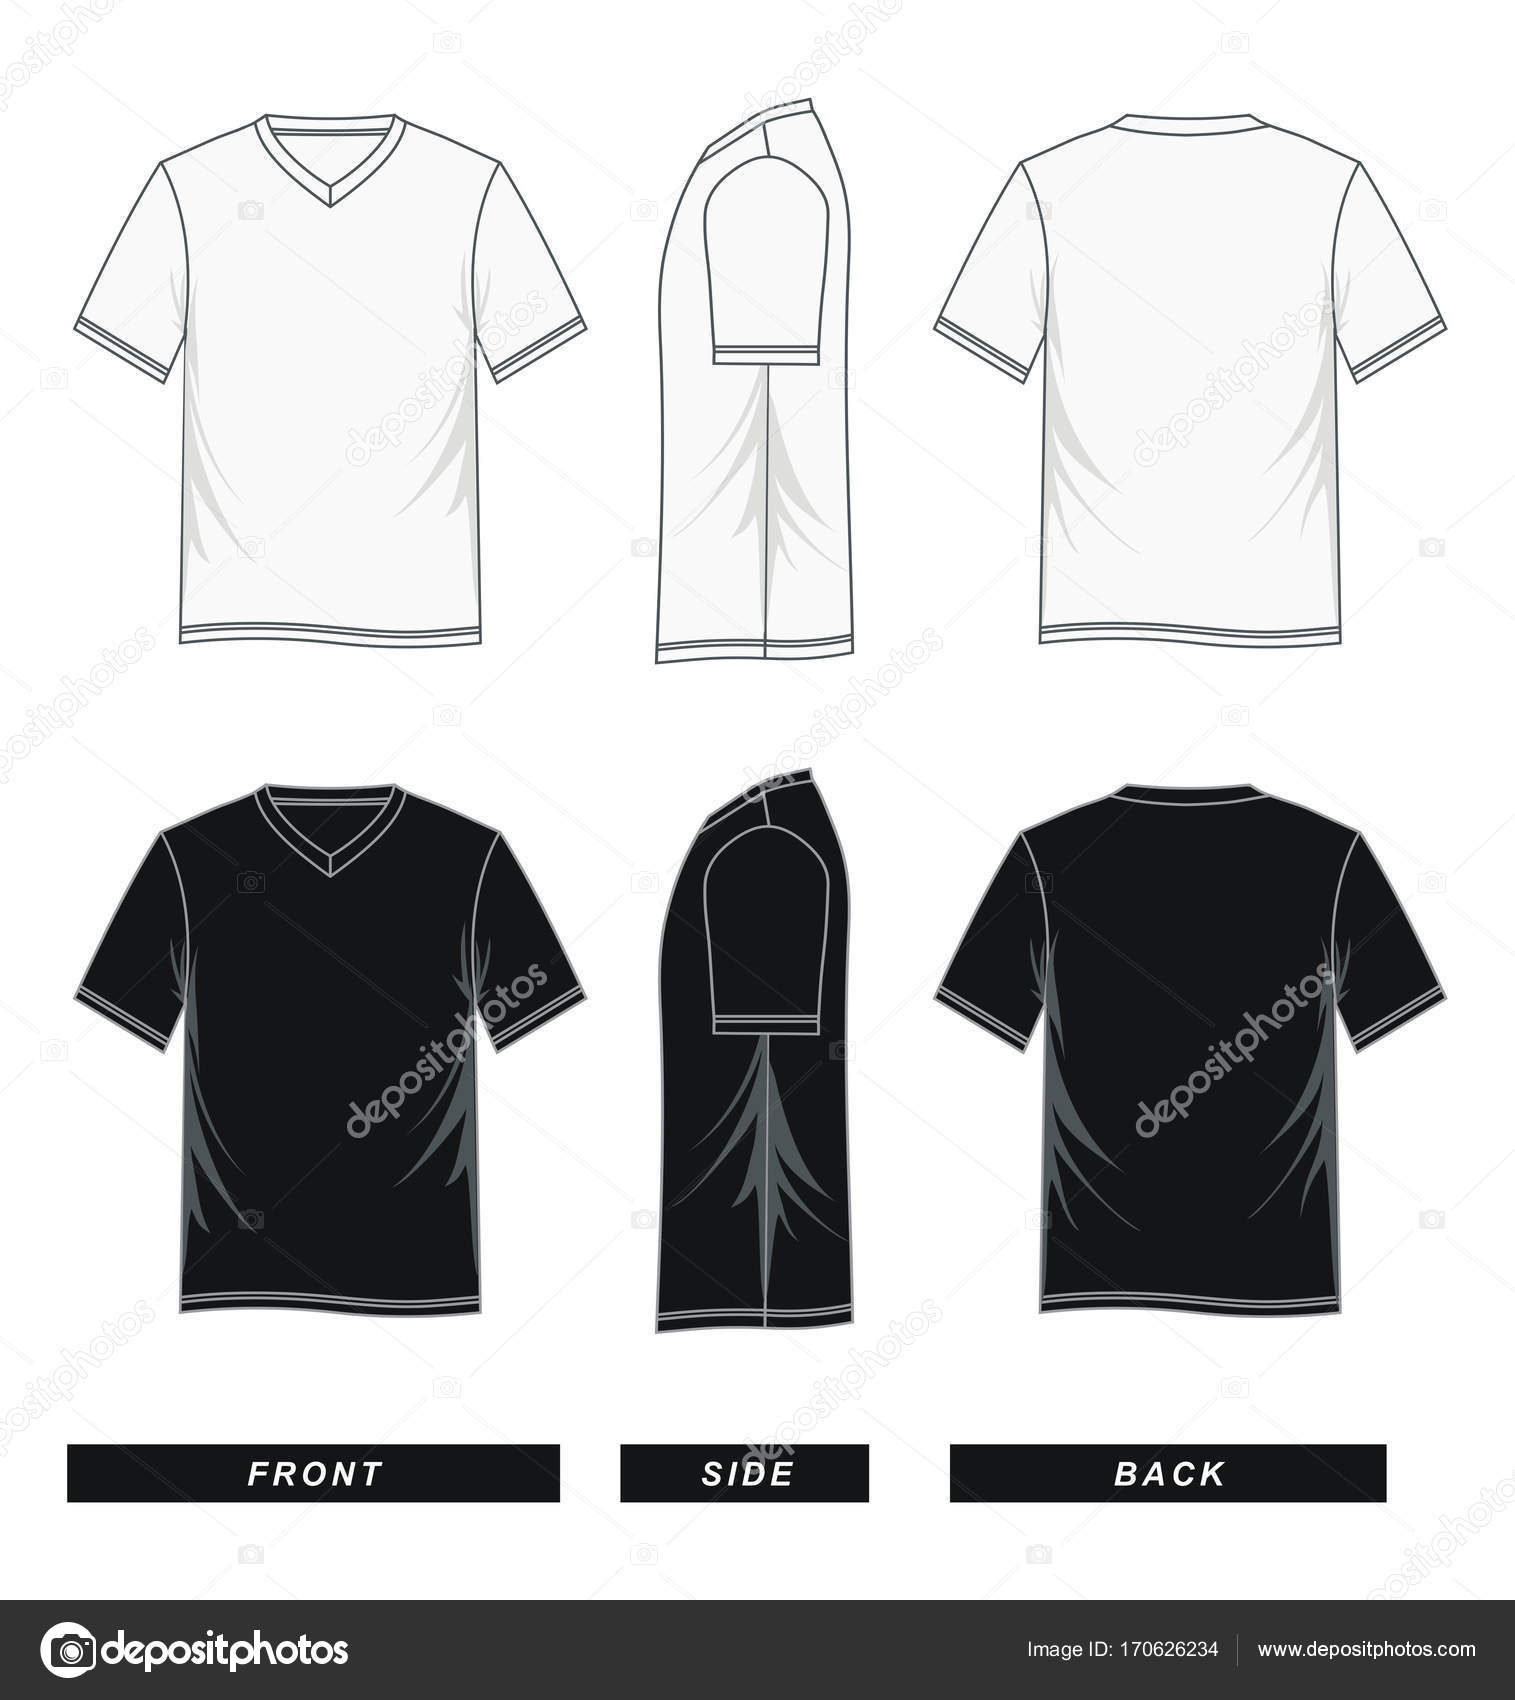 Camiseta Manga Corta Dibujo - Camiseta blanca manga corta unisex con